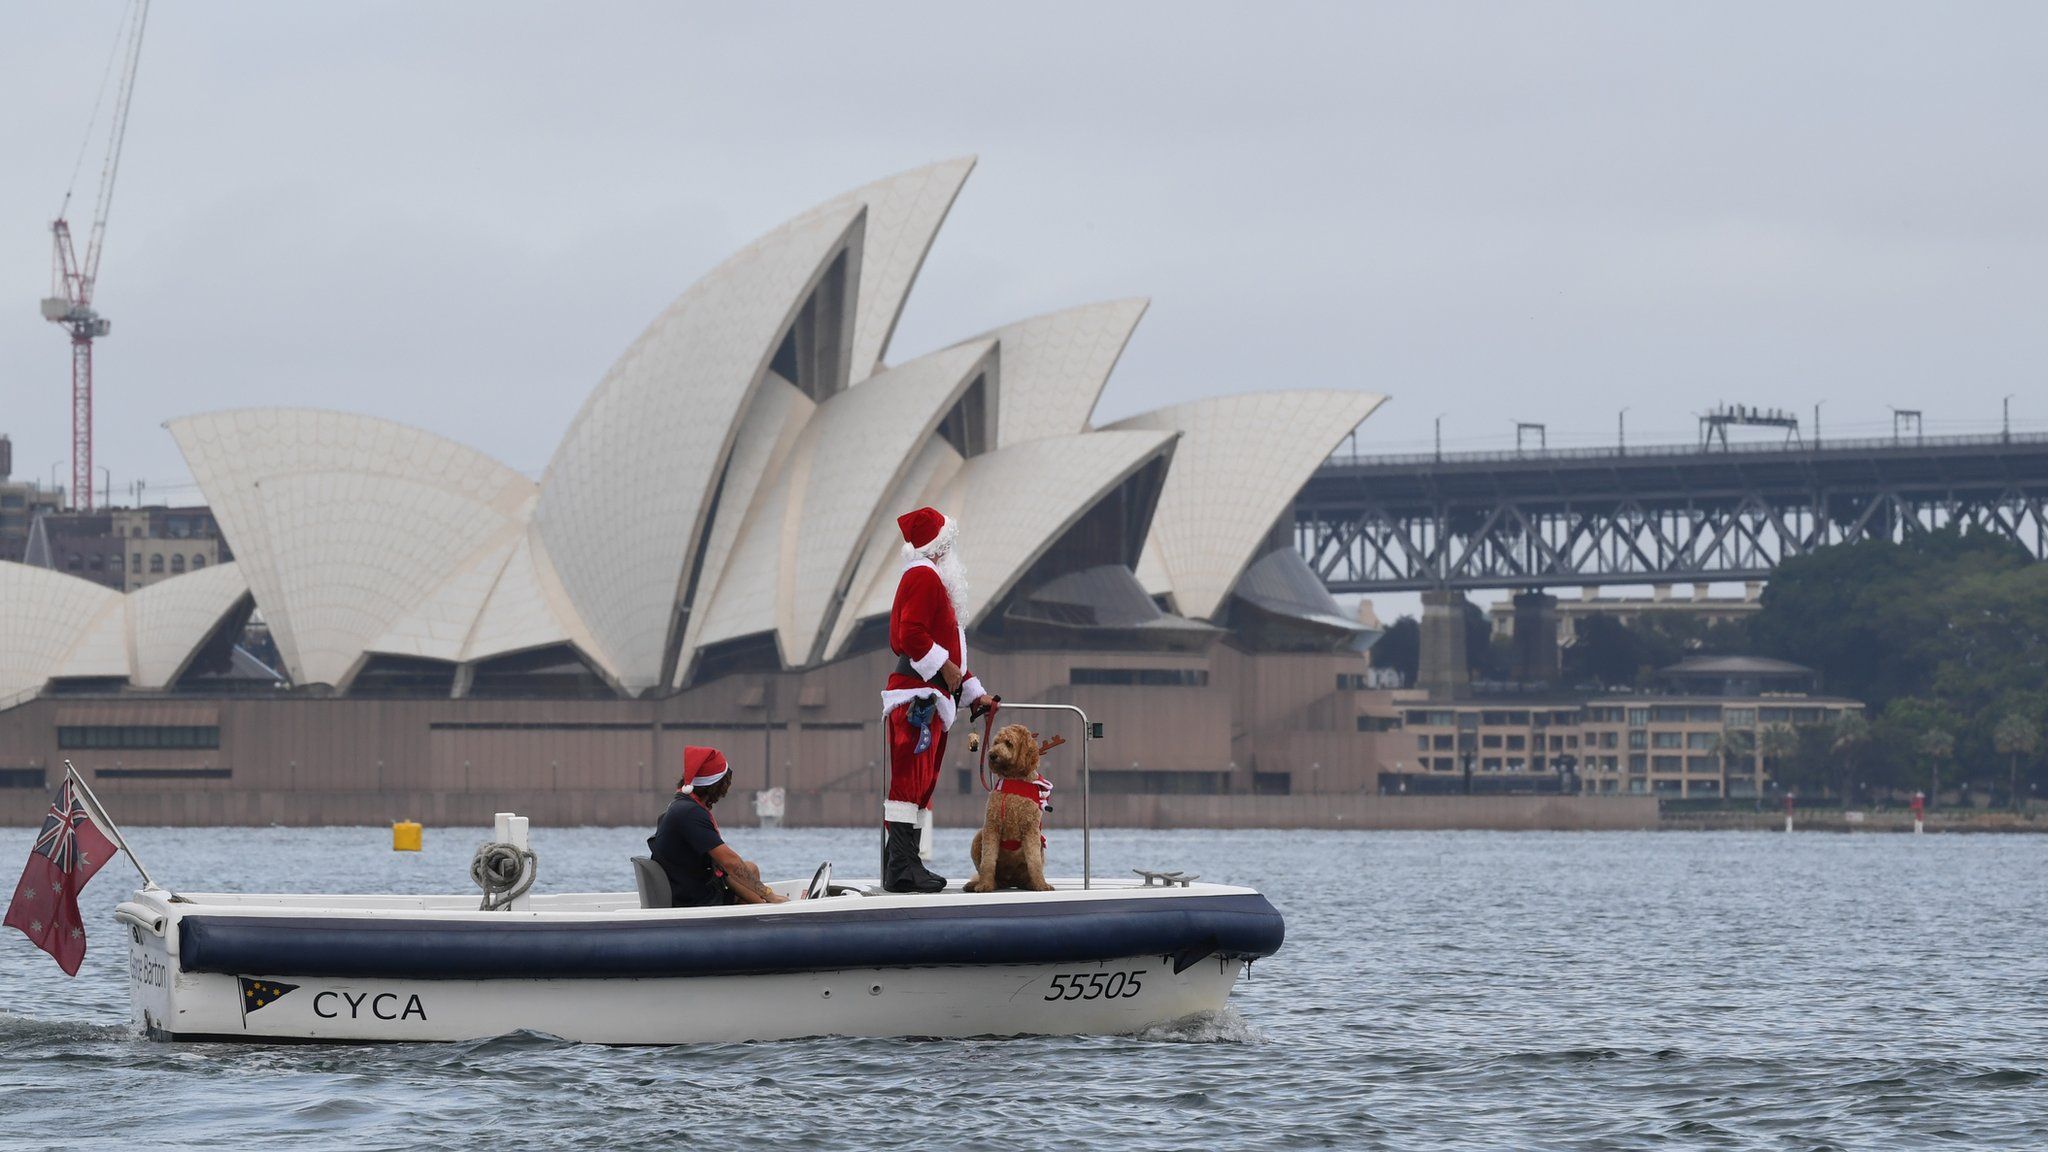 Moș Crăciun și câinele său Rudolph sosesc în portul Sydney pentru a livra cadouri participanților la cursa de iahturi Rolex Sydney to Hobart